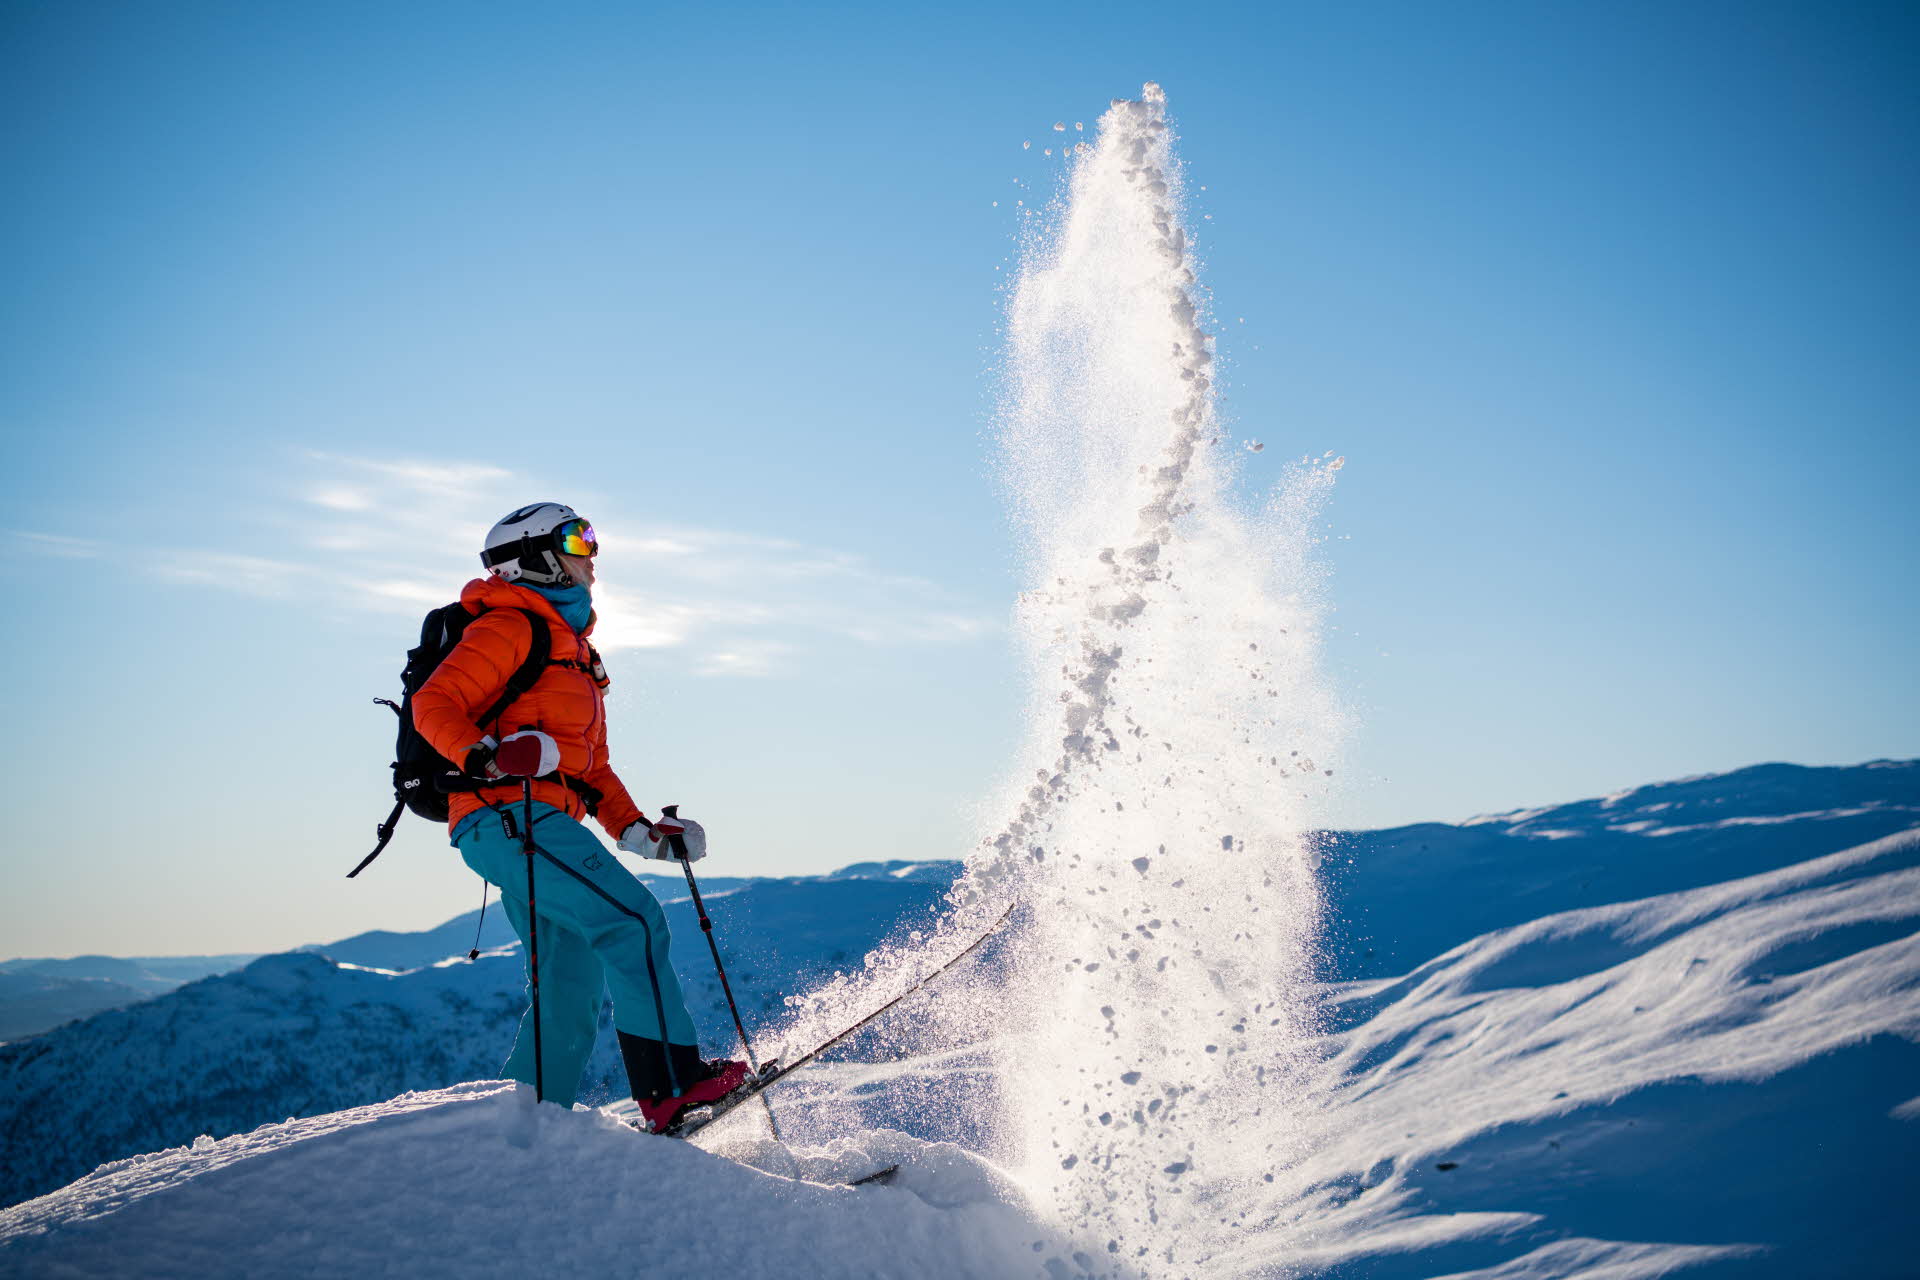 雪山に囲まれ、ヘルメット、赤いジャケット、青いパンツの人物がスキーで雪を投げ上げています。 